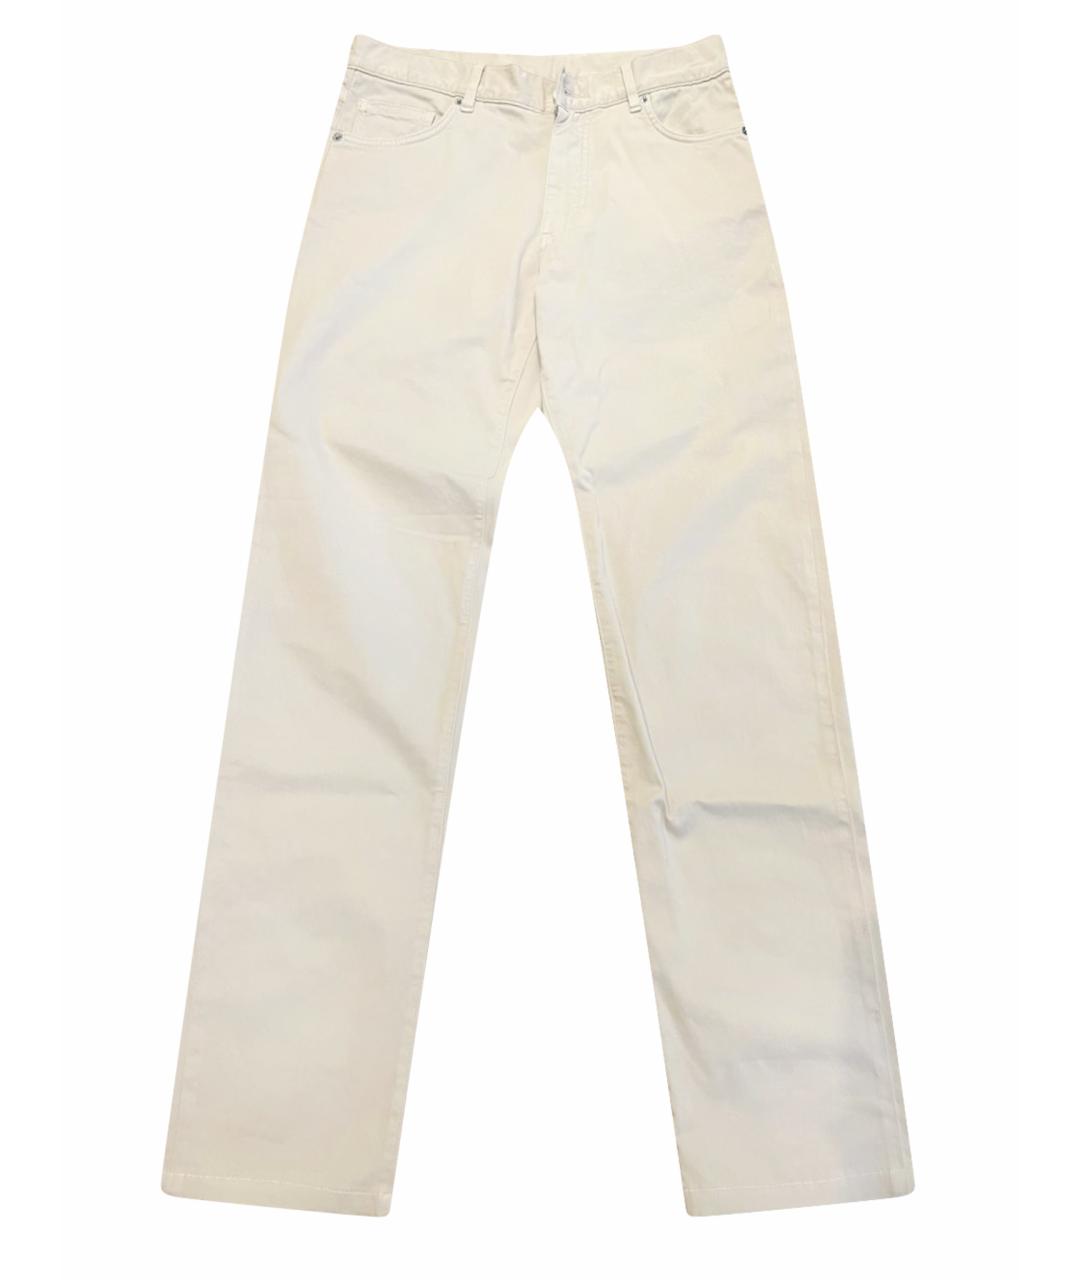 ZEGNA SPORT Бежевые хлопковые джинсы скинни, фото 1